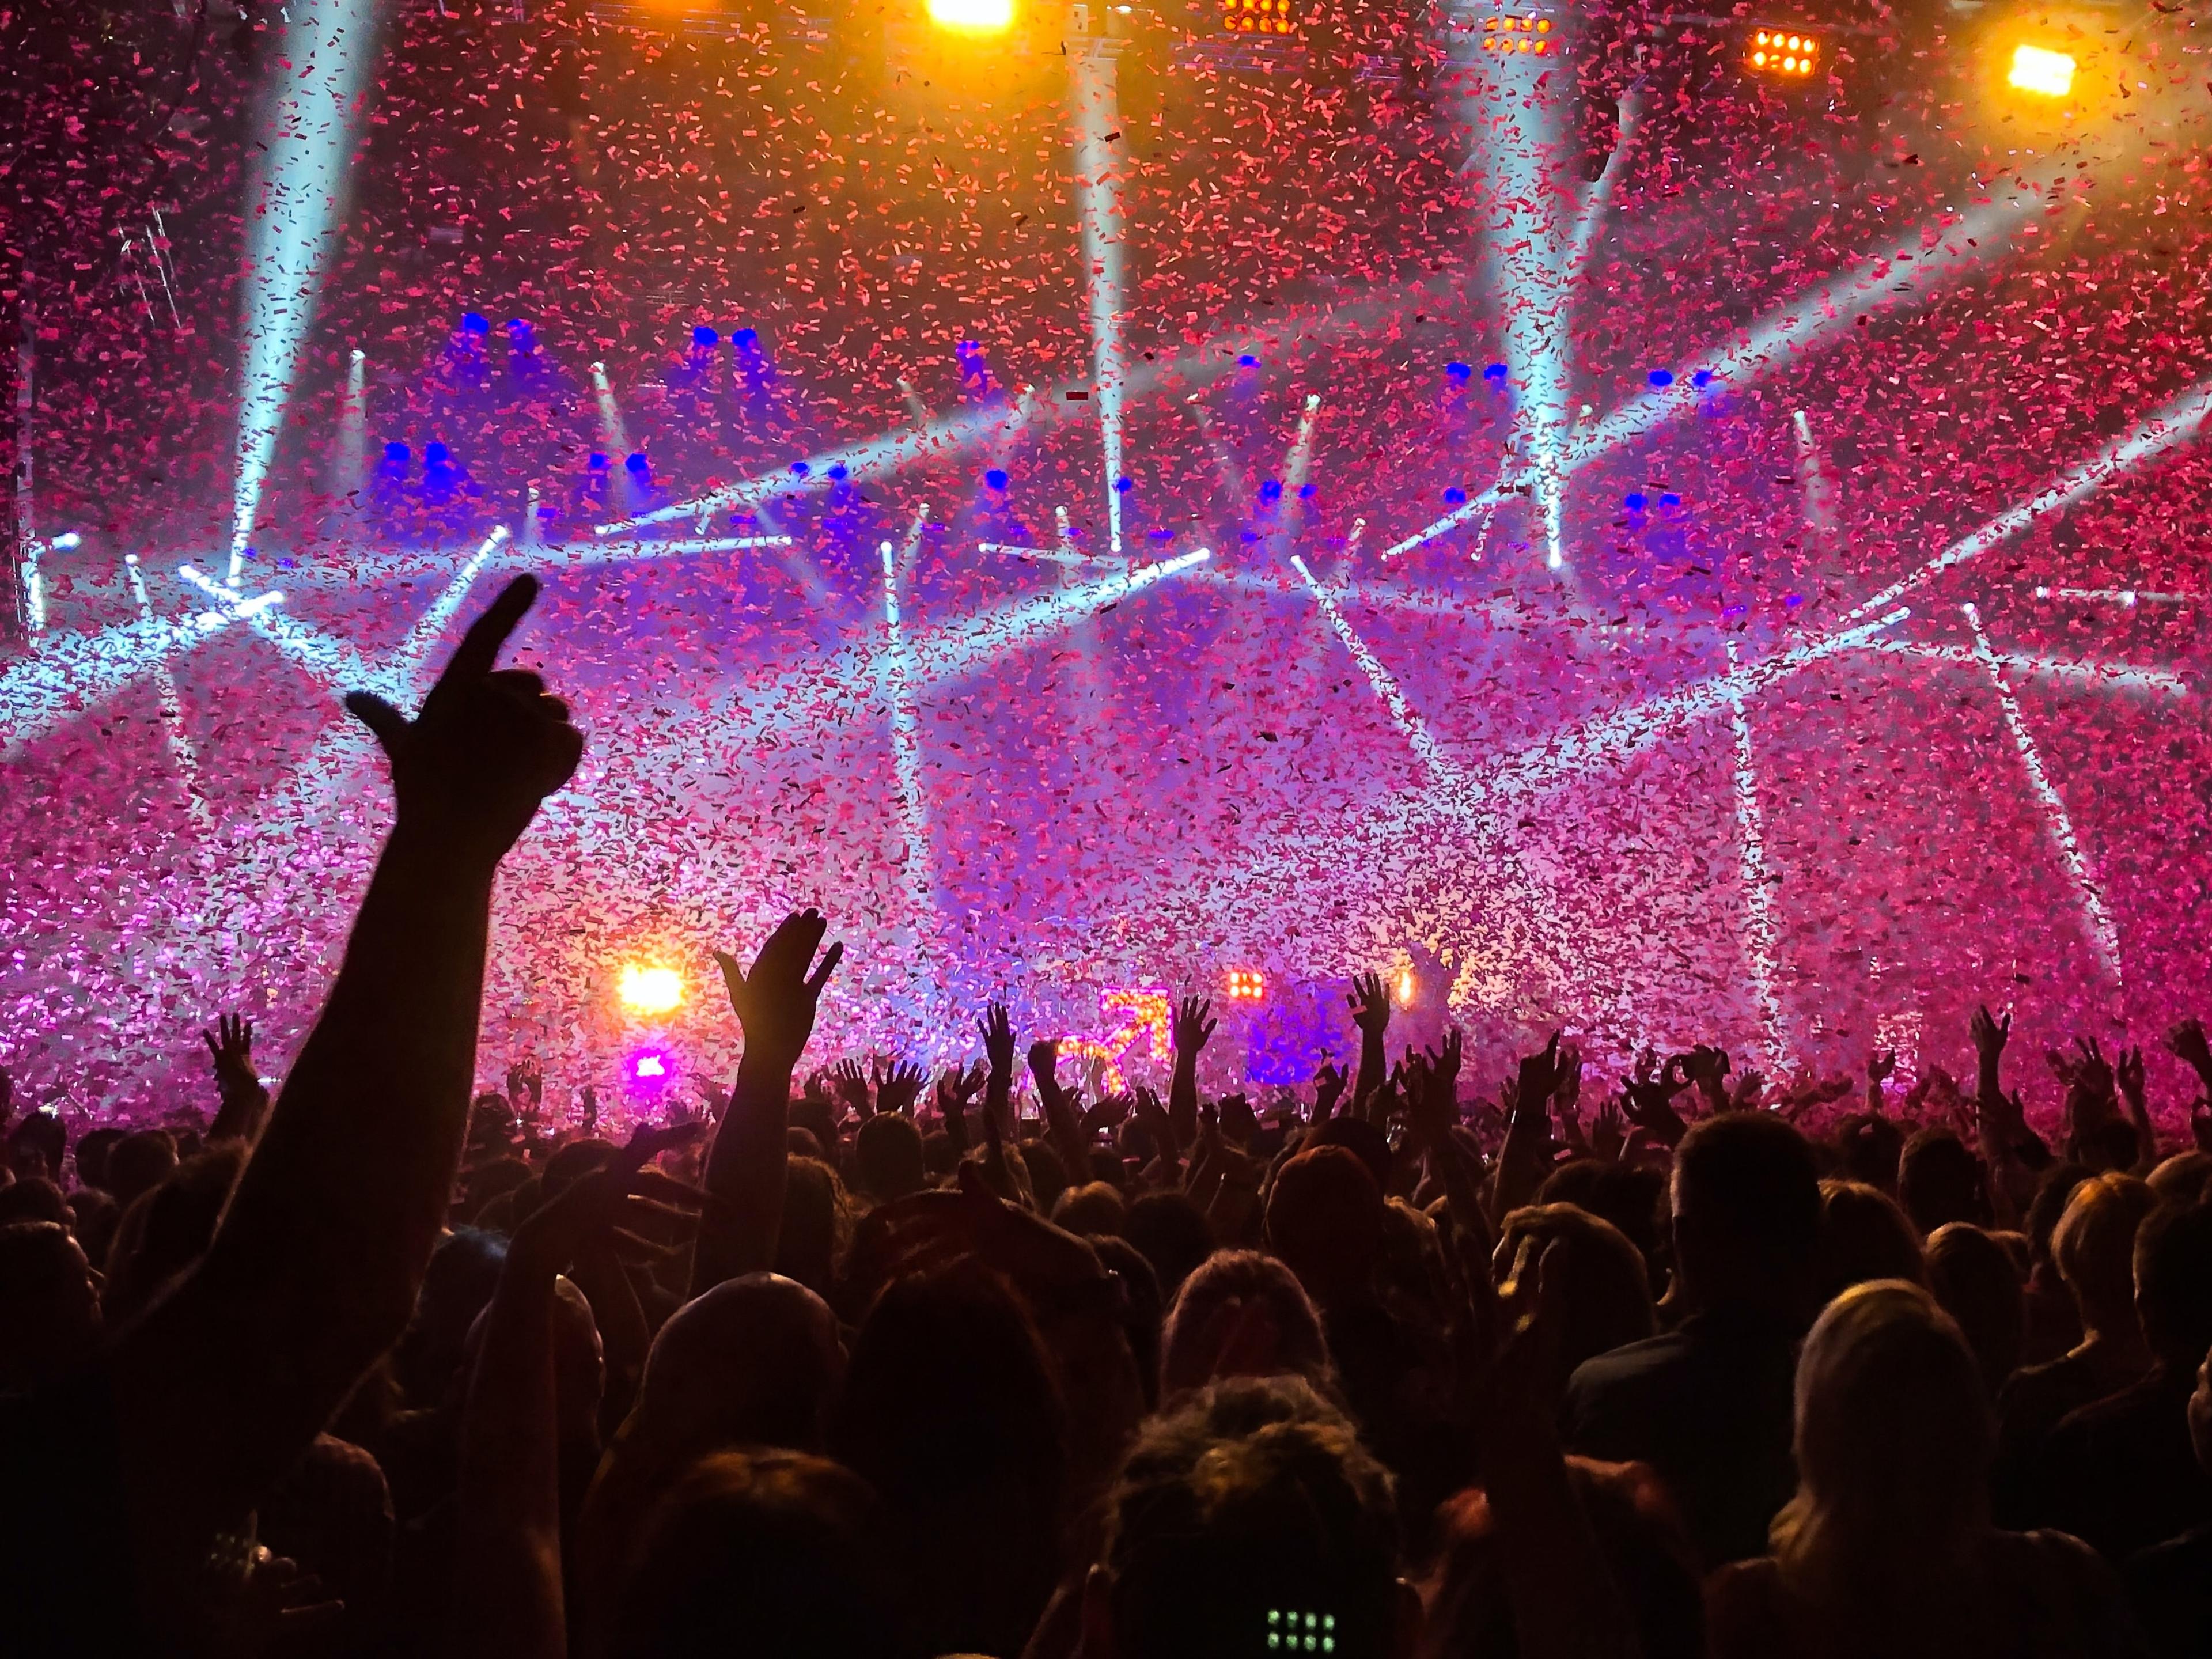 Une photo montrant une foule dansante avec beaucoup de confettis et d'effets laser.